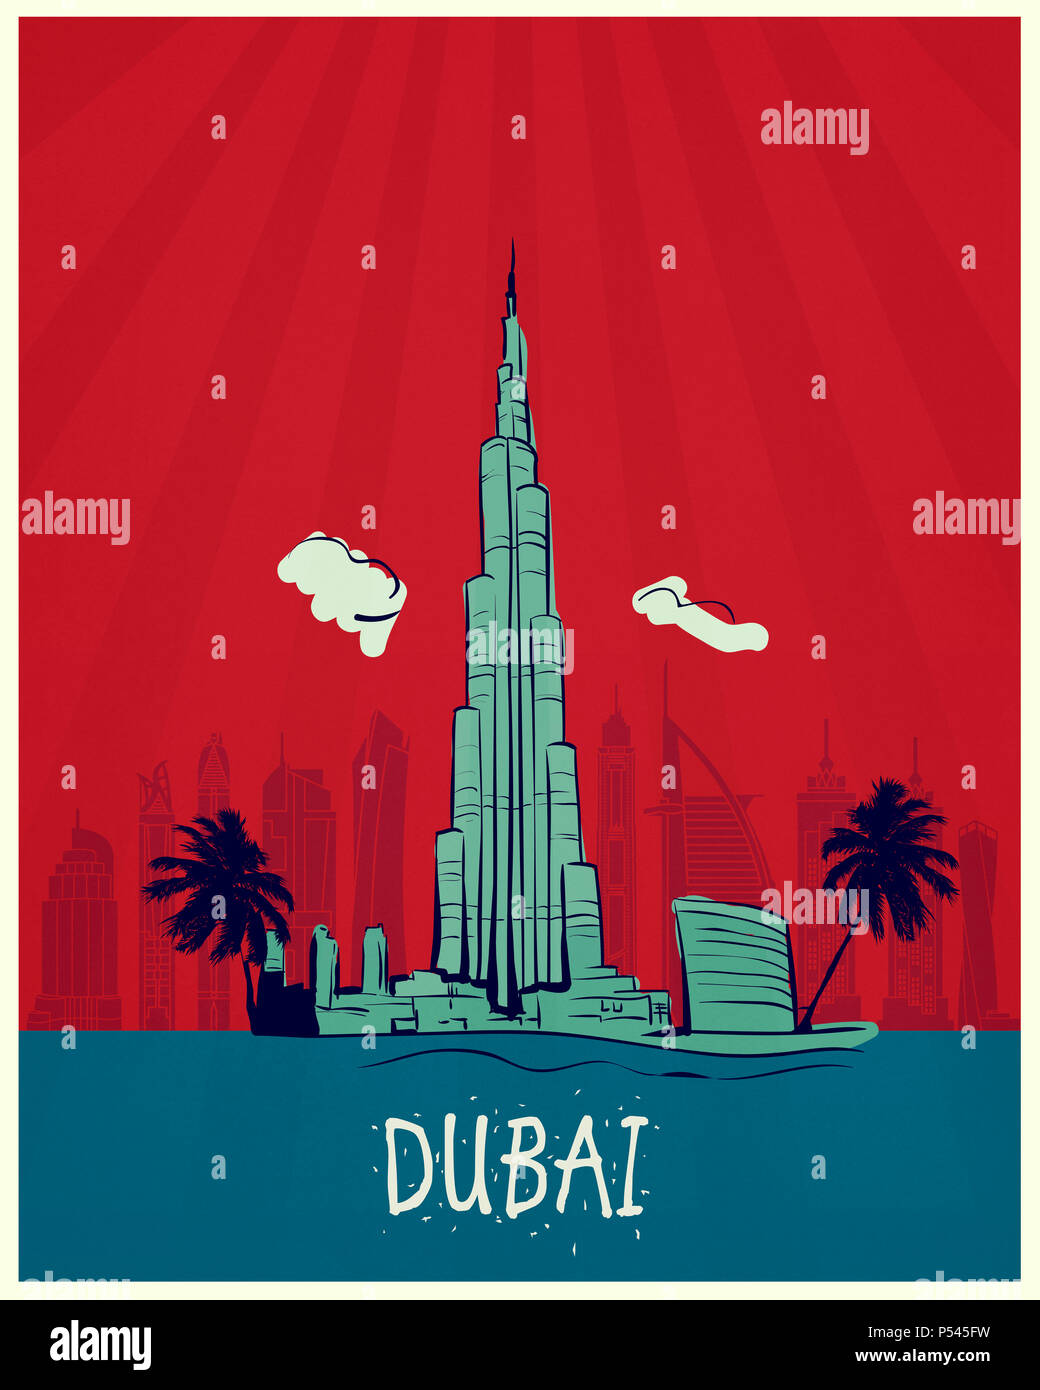 Dubai vintage poster travel Stock Photo